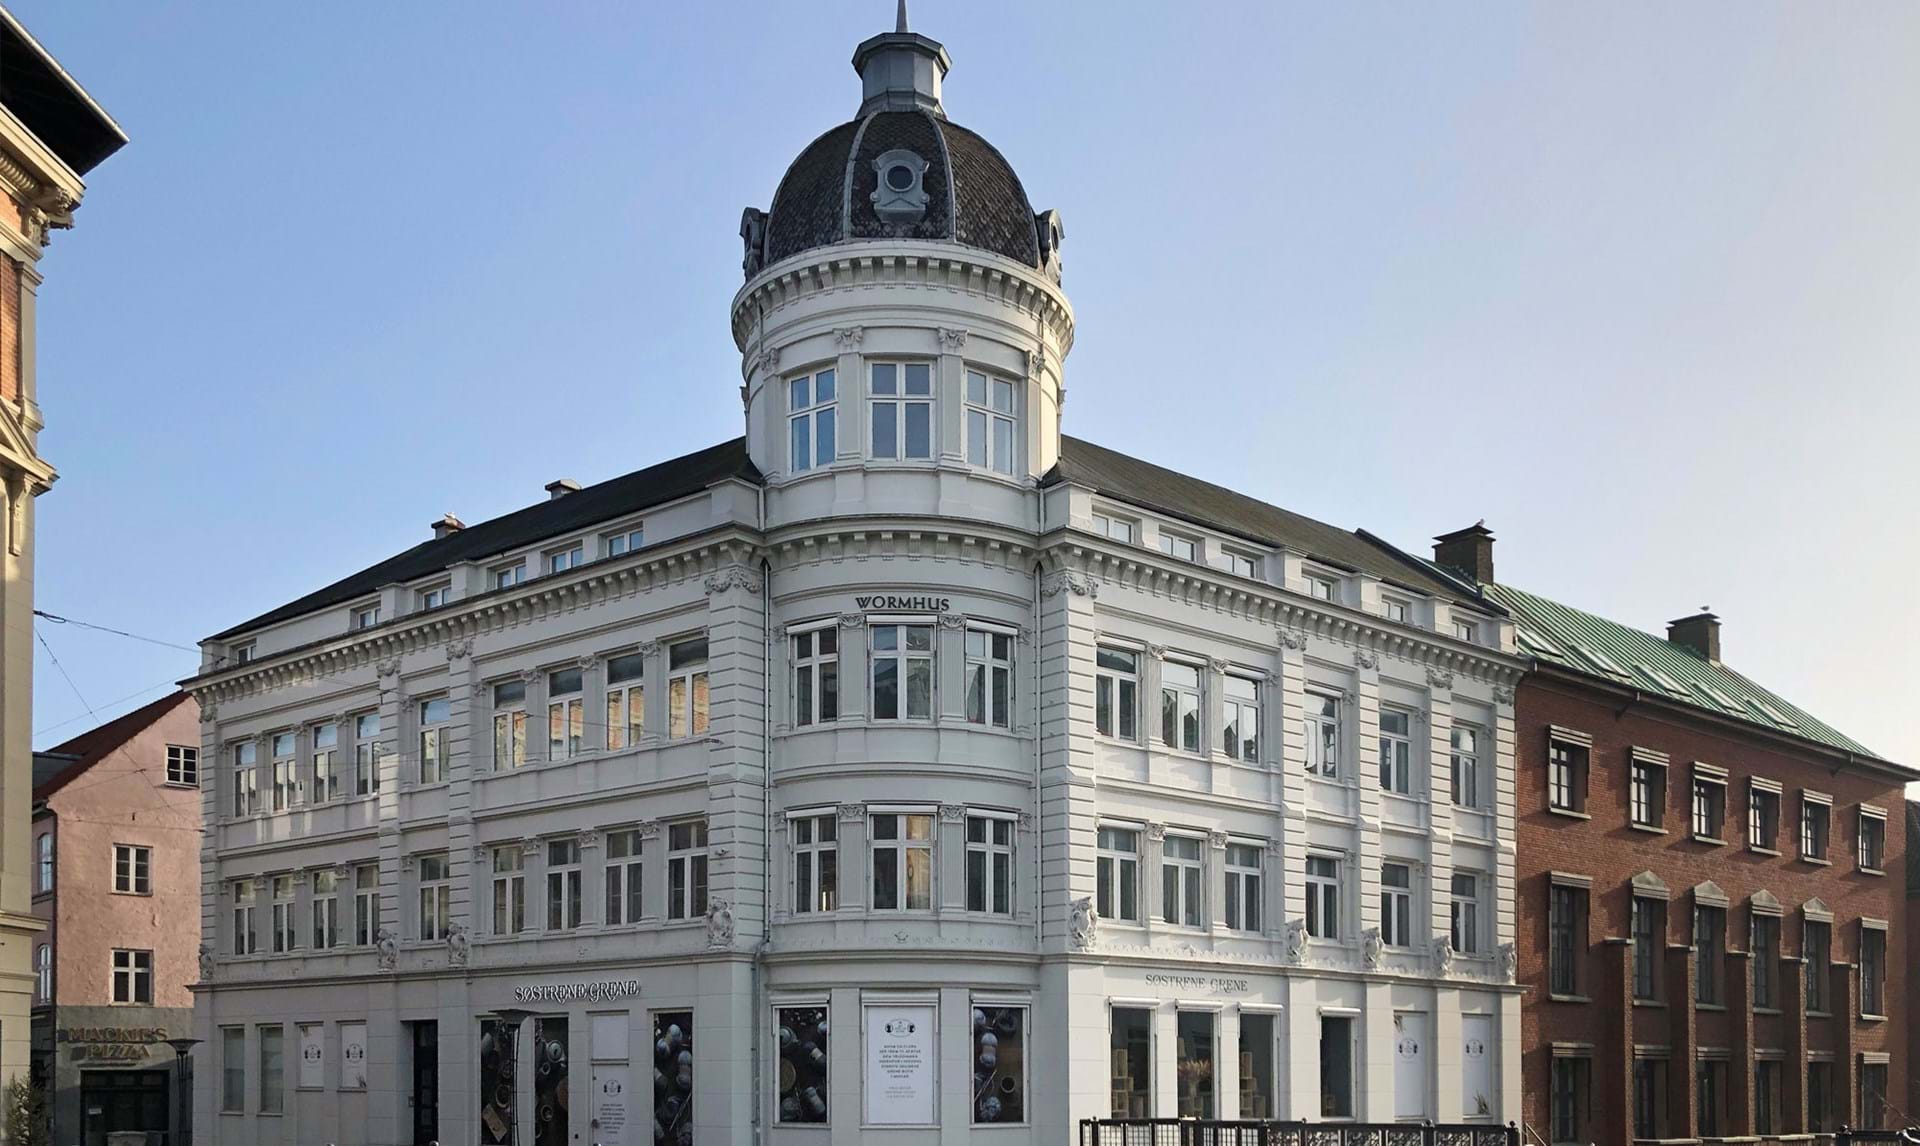 Søstrene Grene: Verdens største butik åbnet i Århus - her - ALT.dk